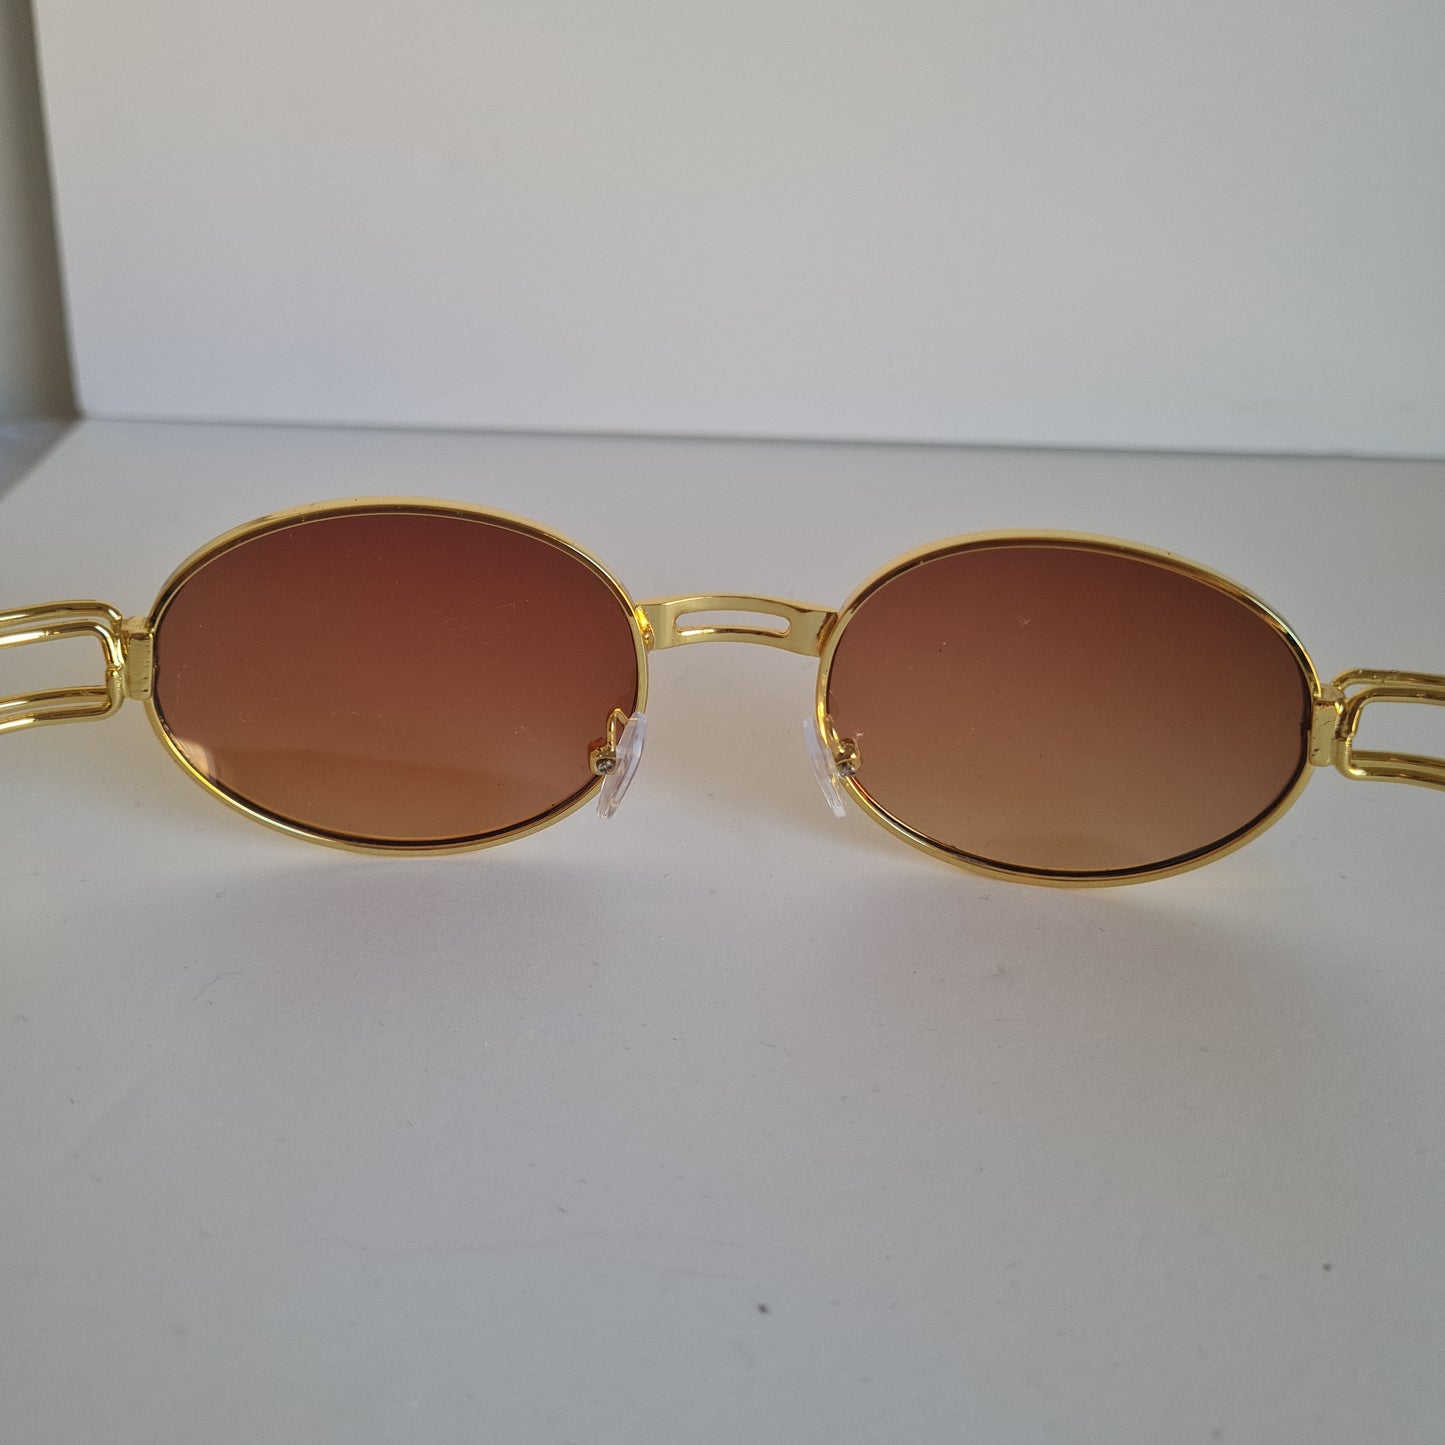 Gold framed Sunglasses